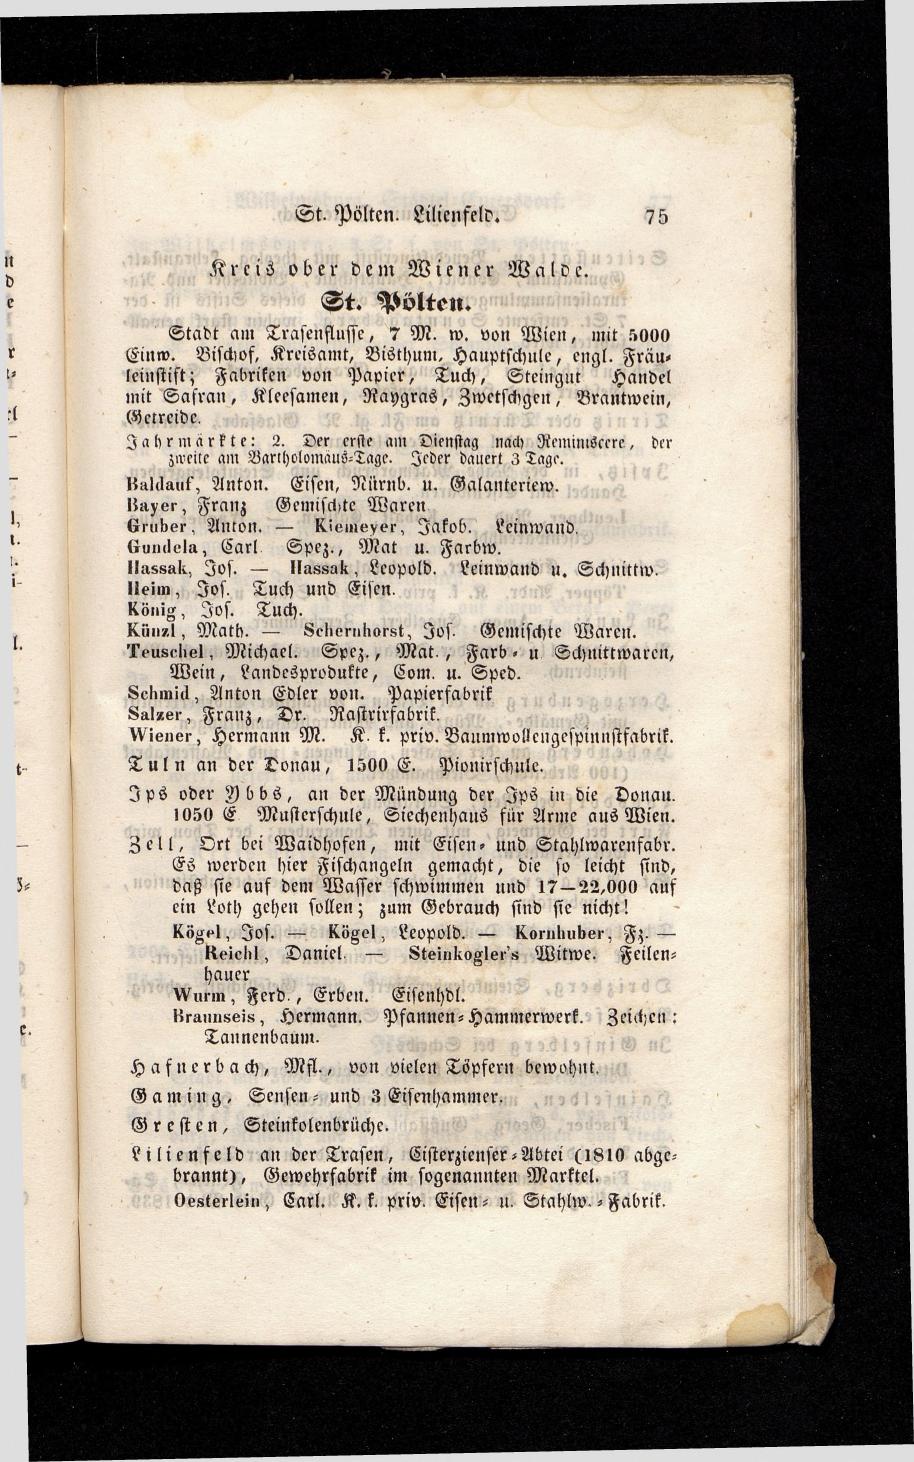 Grosses Adressbuch der Kaufleute. No. 13. Oesterreich ober u. unter der Enns 1844 - Page 79